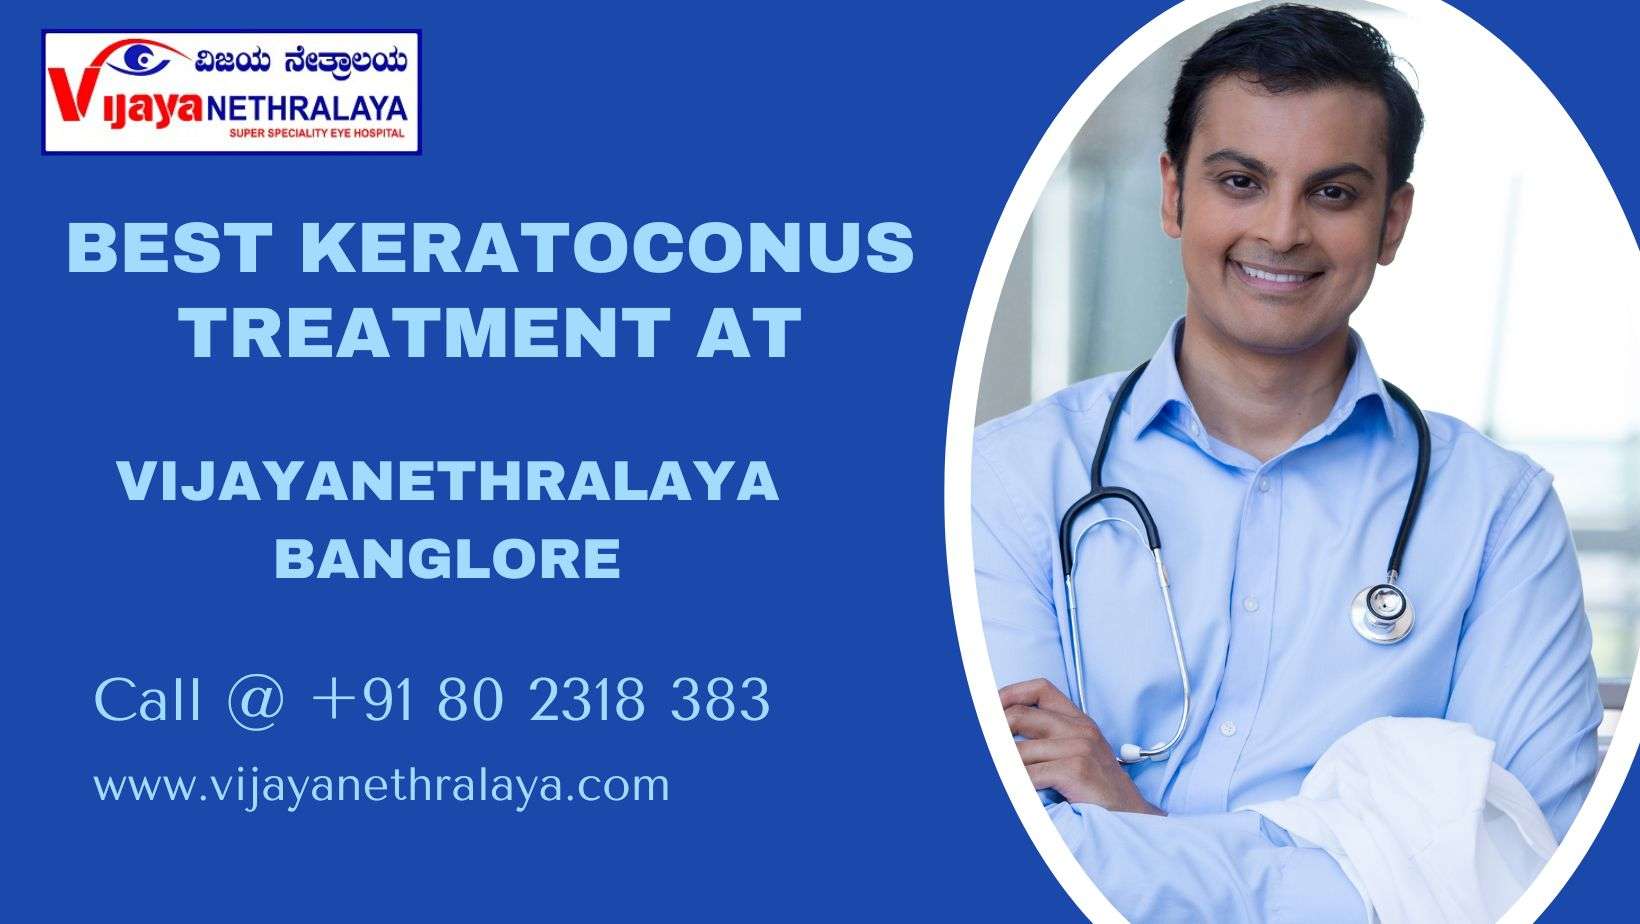 treatment of Keratoconus at Vijaya Nethralaya